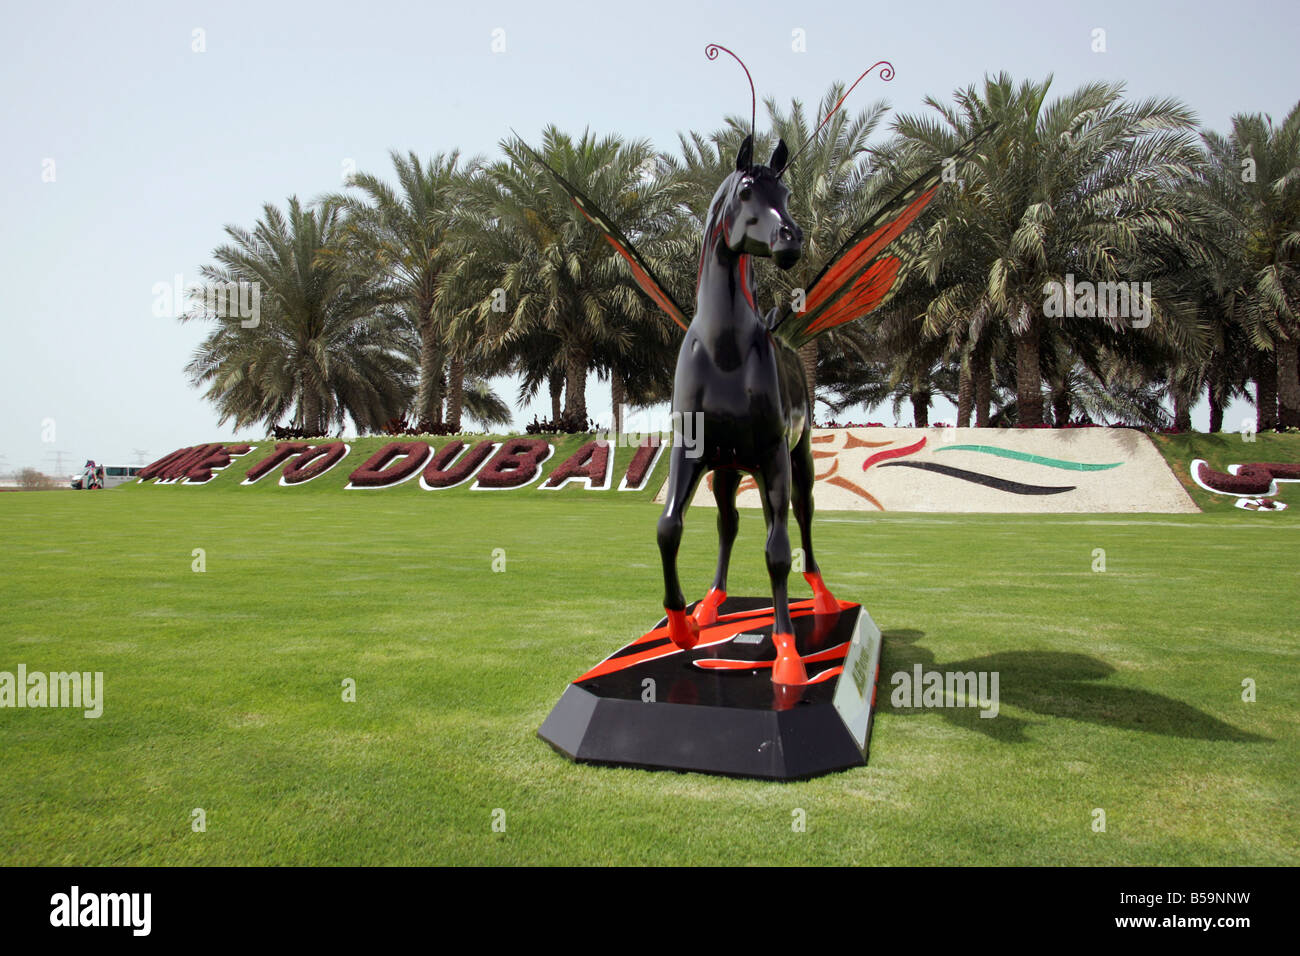 Sculpture d'un cheval avec des palmiers à l'arrière-plan, Dubaï, Émirats Arabes Unis Banque D'Images